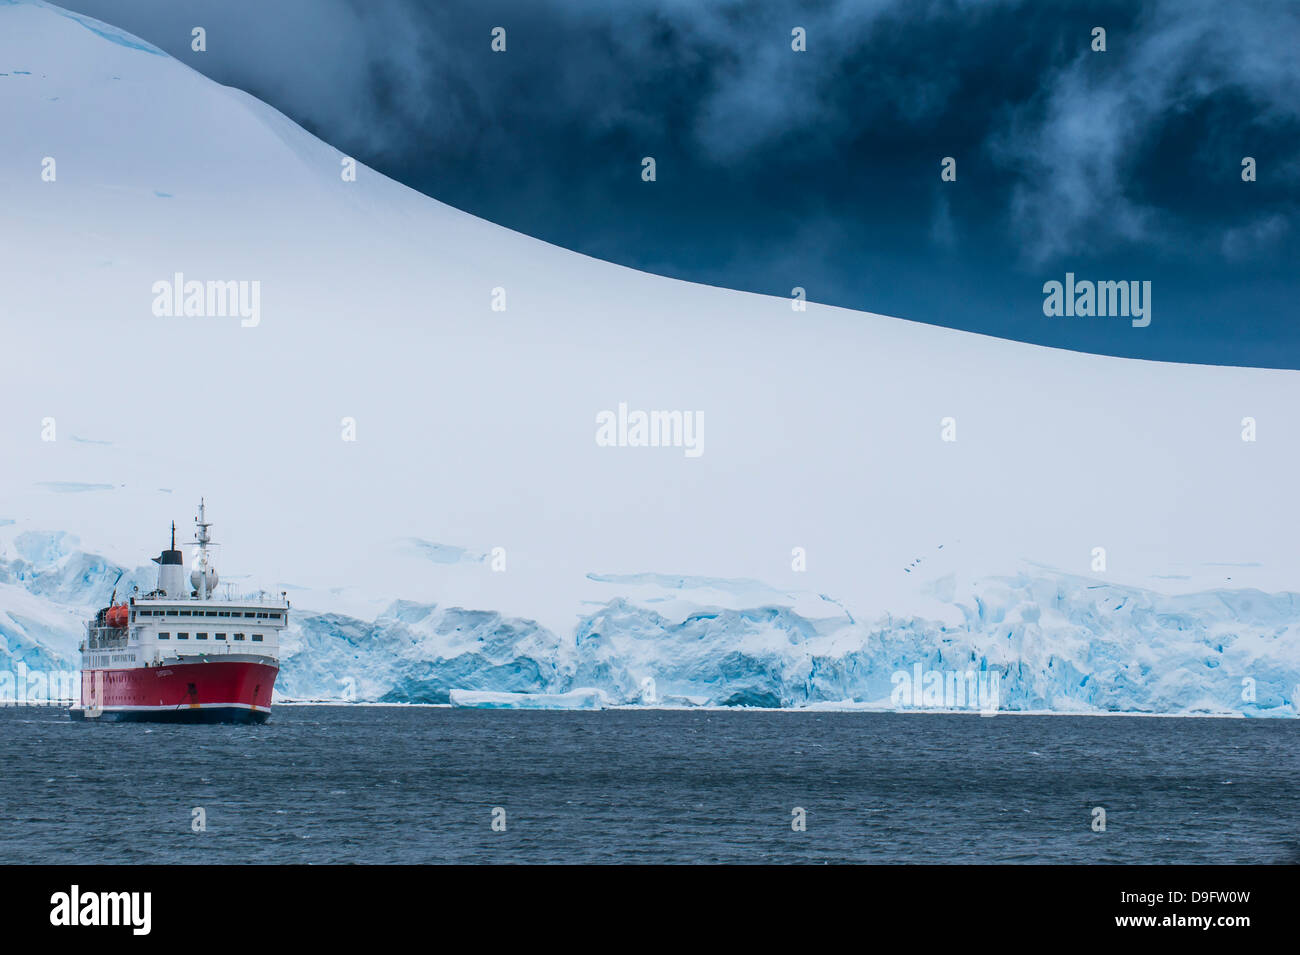 Bateau de croisière dans les glaciers et icebergs, Port Lockroy research station, l'Antarctique, régions polaires Banque D'Images